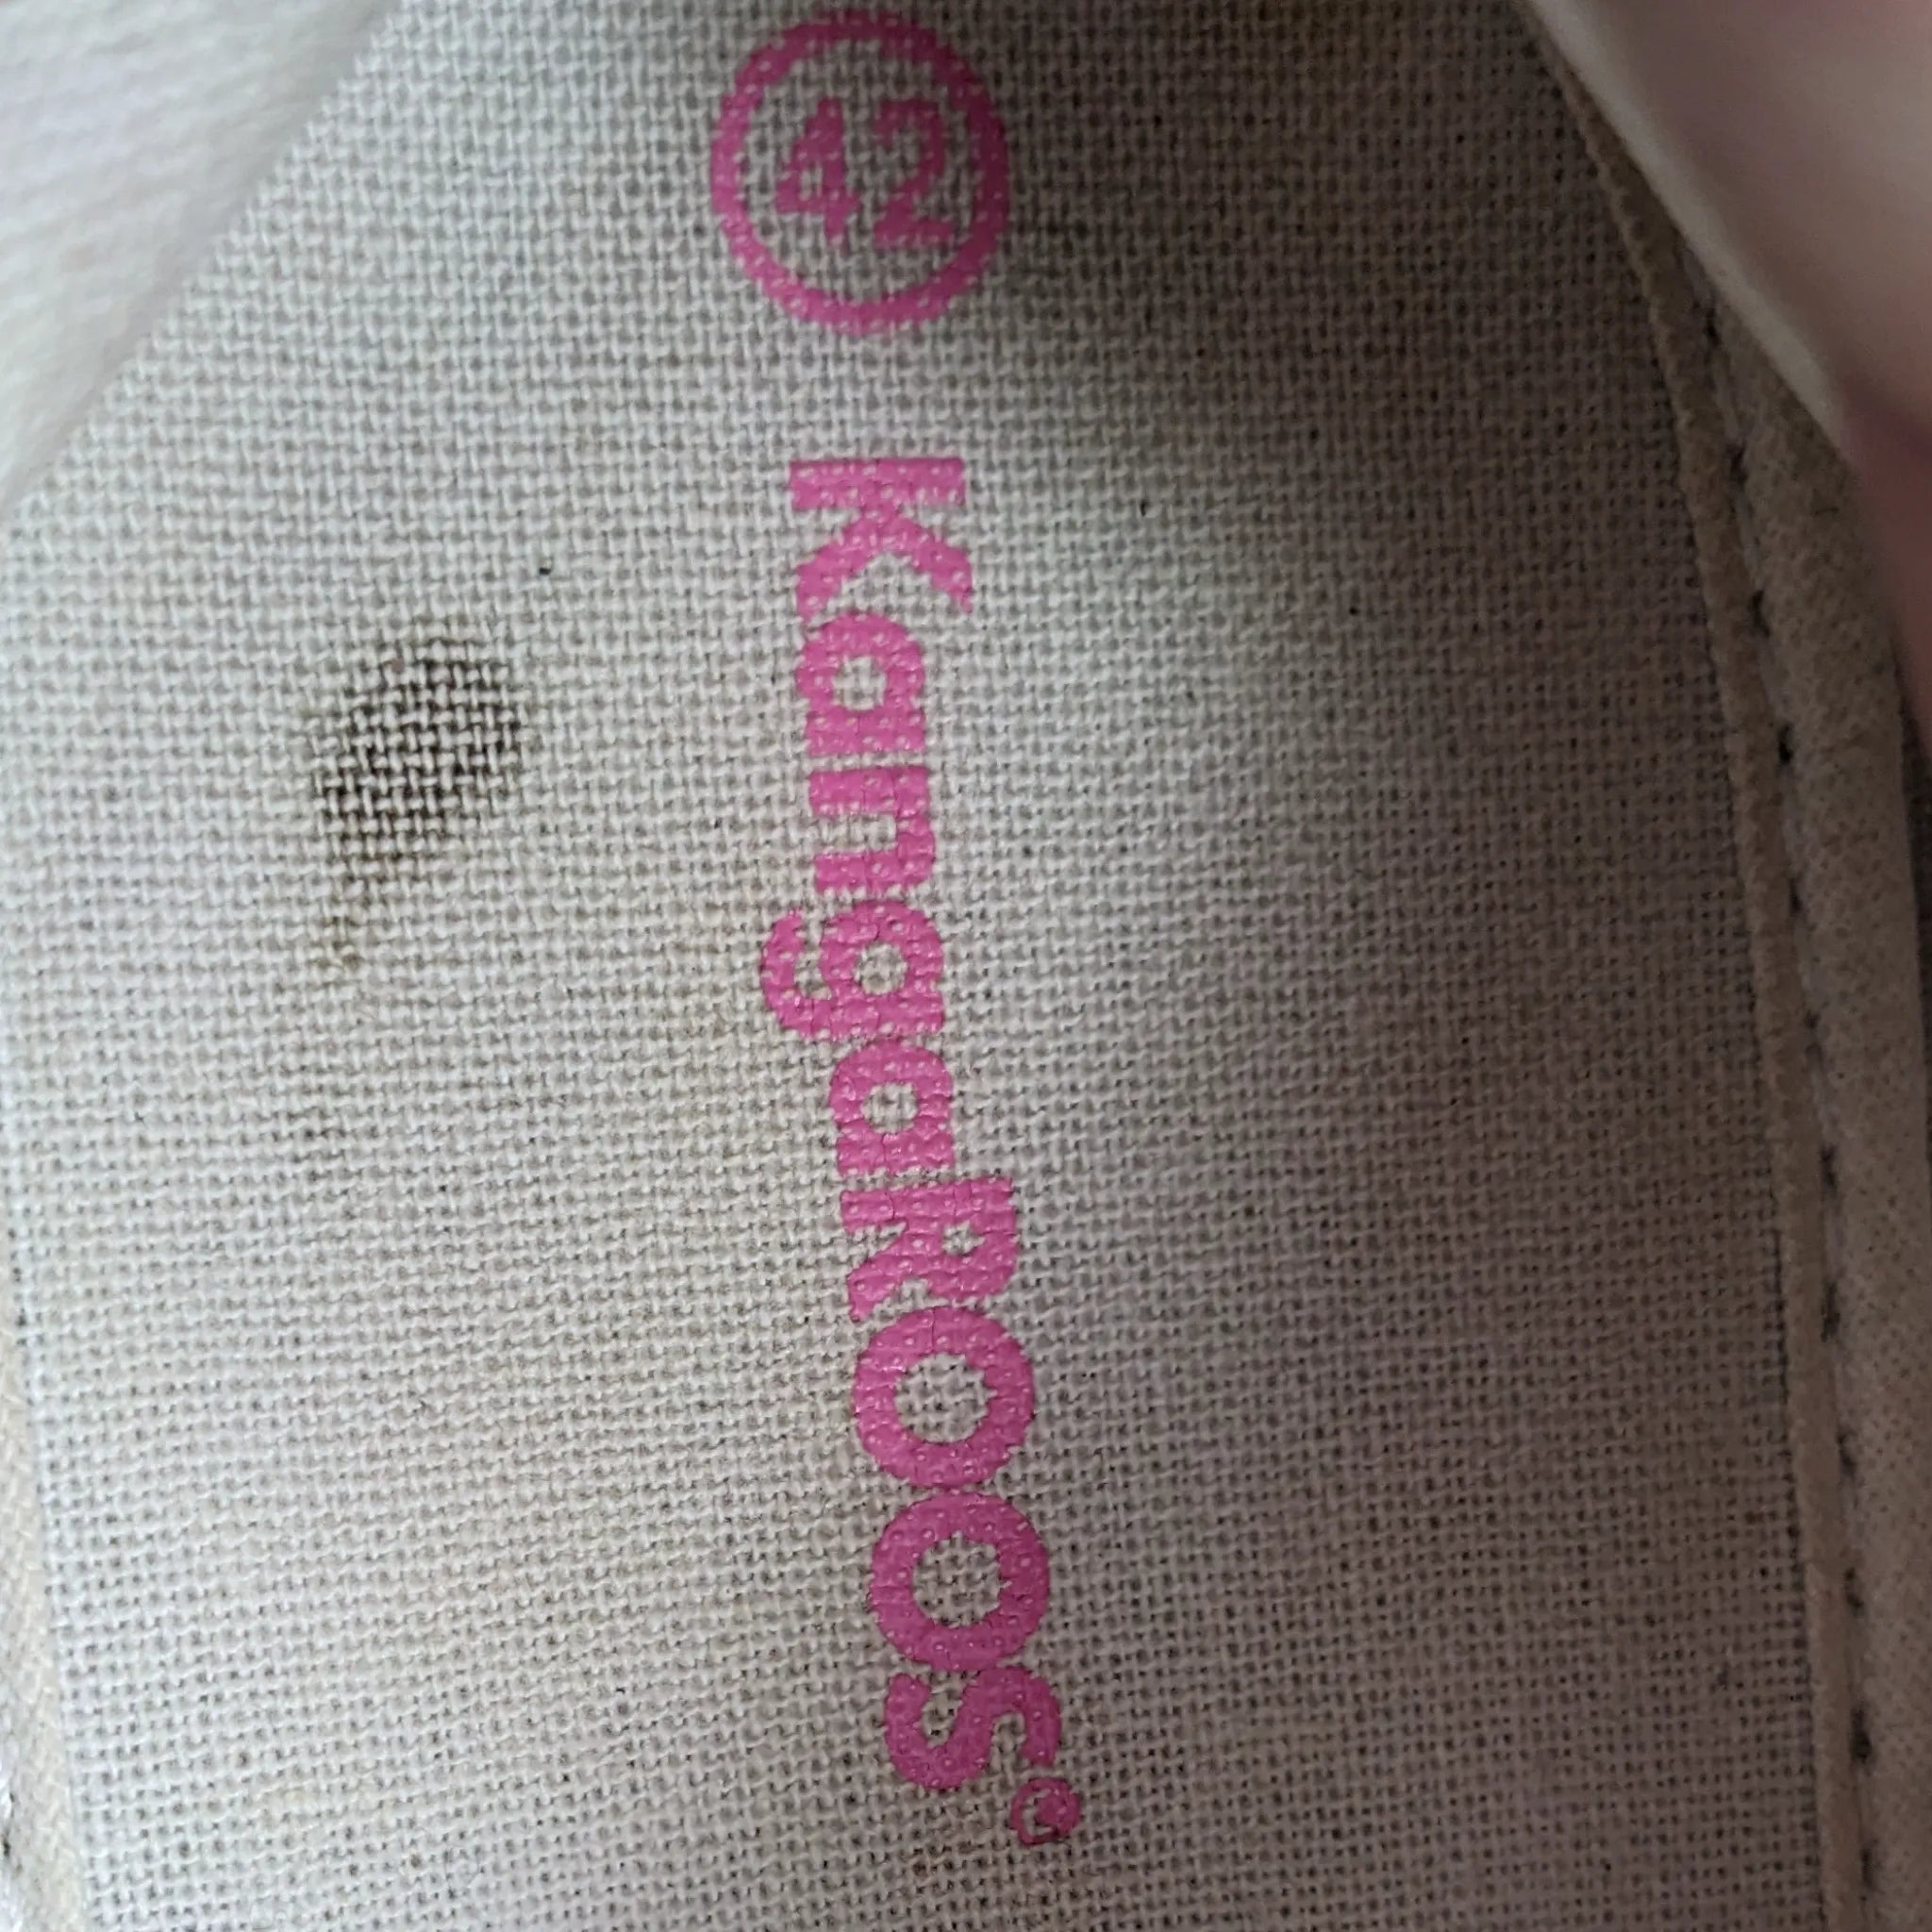 أحذية رياضية باللون الوردي من KangaRoos